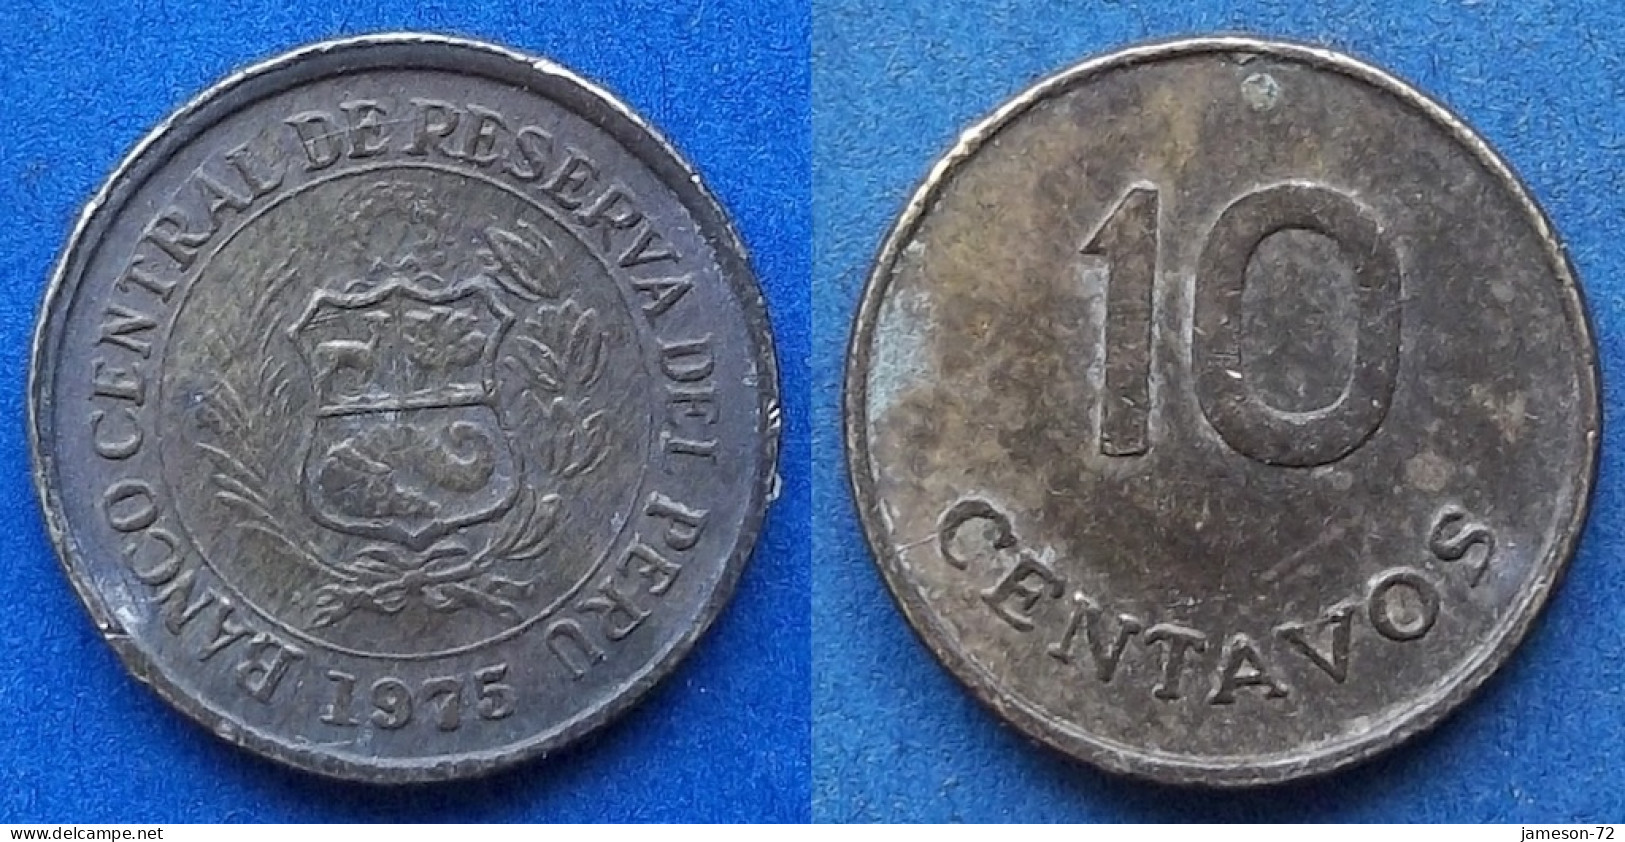 PERU - 10 Centavos 1975 KM# 263 Decimal Coinage (1893-1986) - Edelweiss Coins - Peru